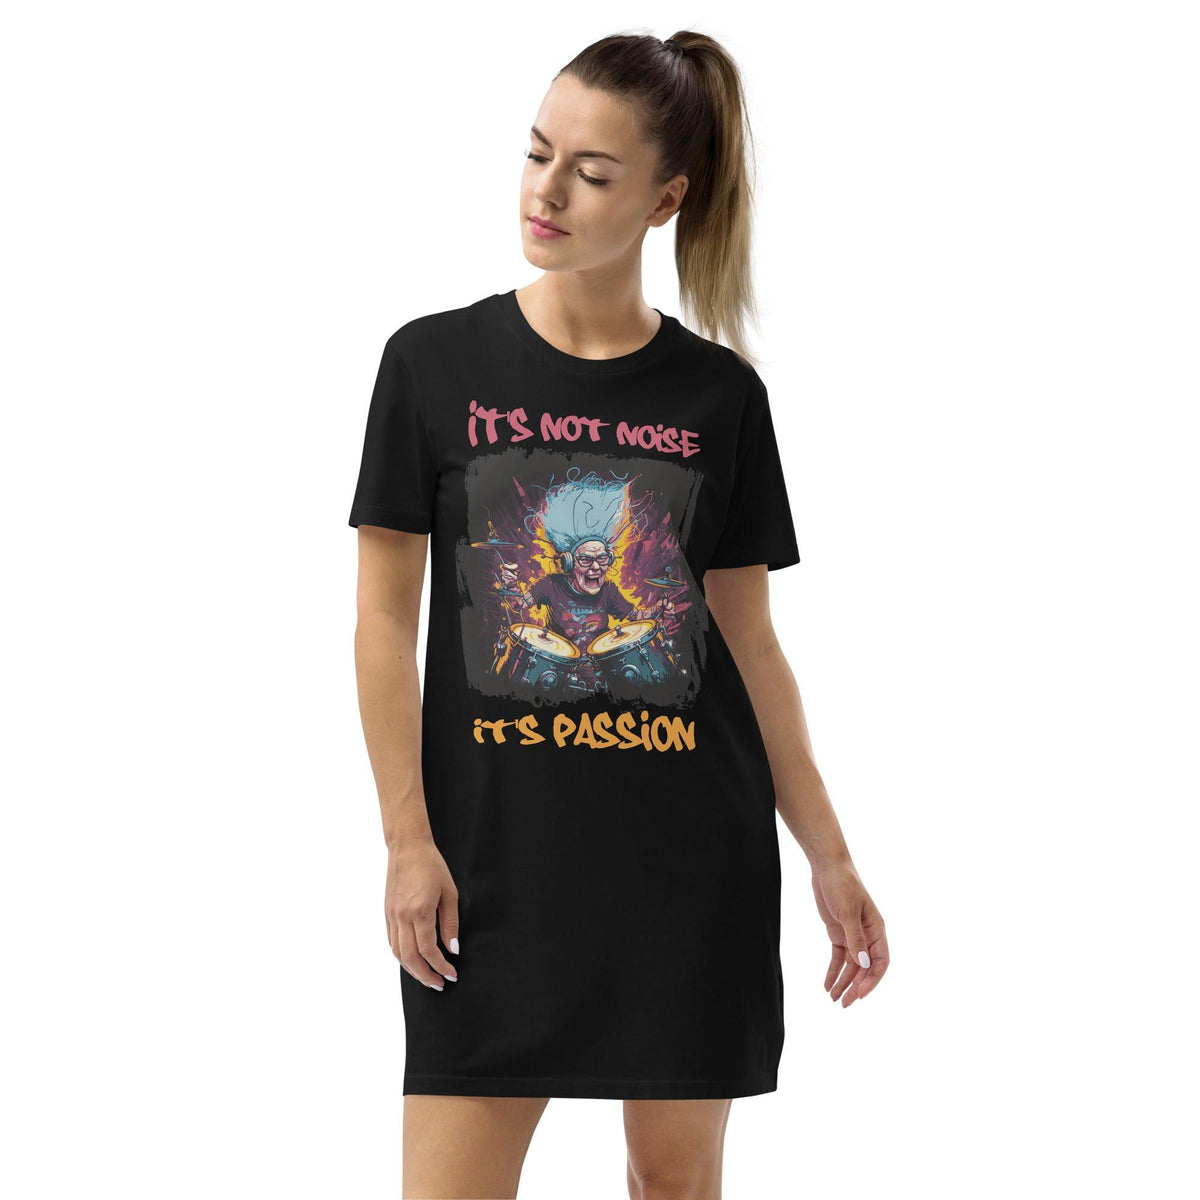 It's passion organic cotton t-shirt dress - Beyond T-shirts